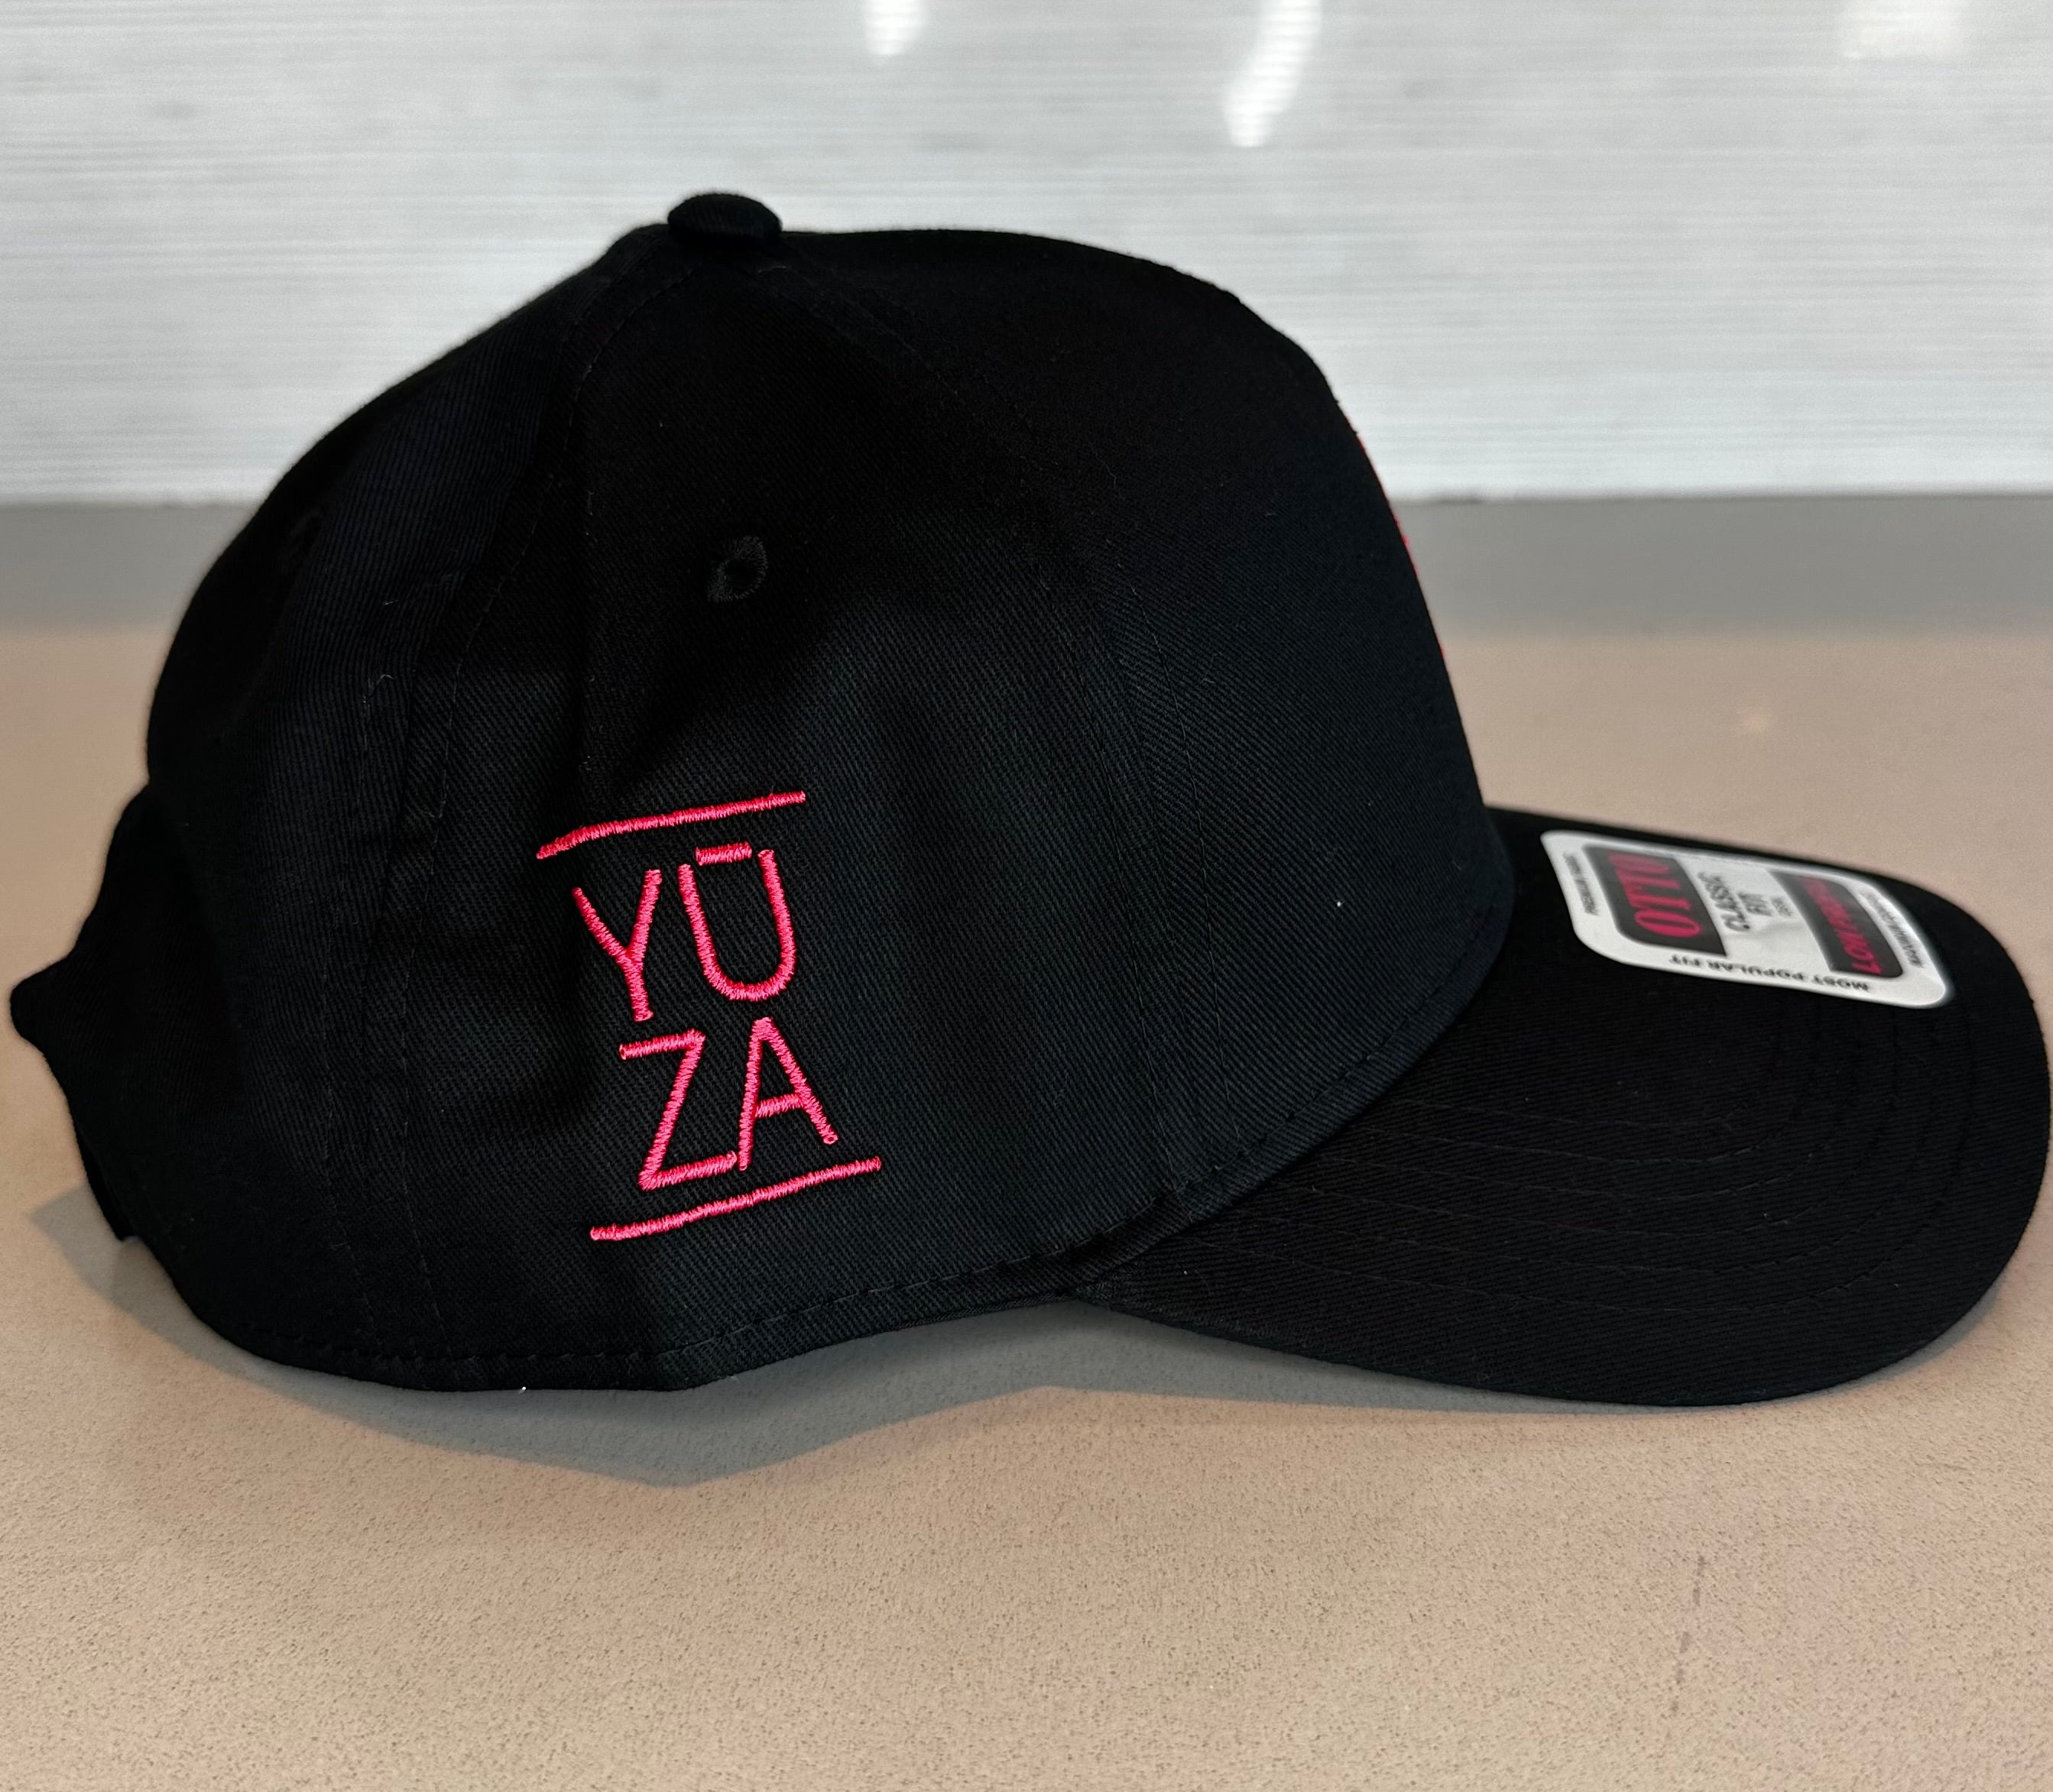 YUZA Black Cap **4 YUZA SUPERSTICKS INCLUDED**